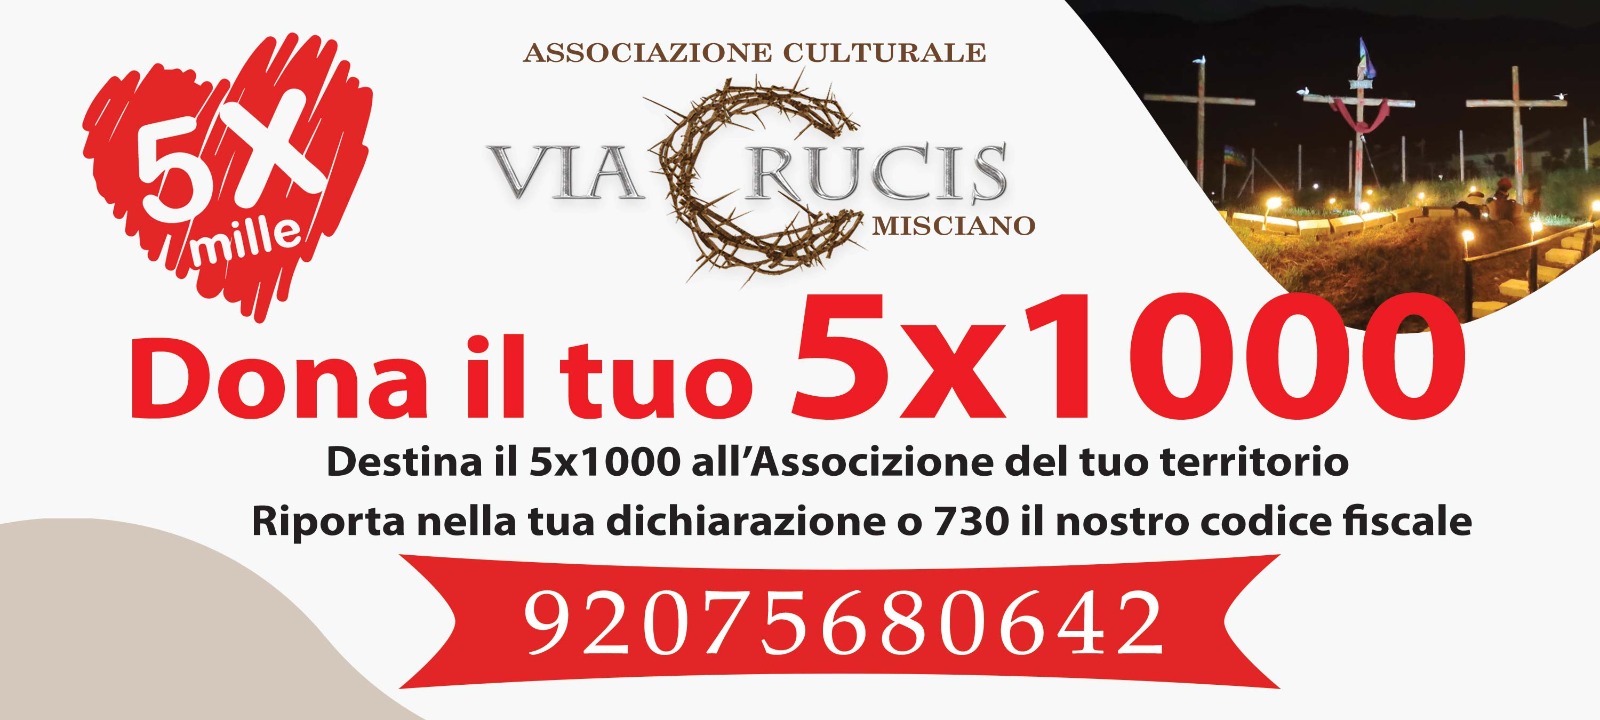 Dona il 5x1000 alla via Crucis Vivente Misciano. Codice Fiscale 92075680642